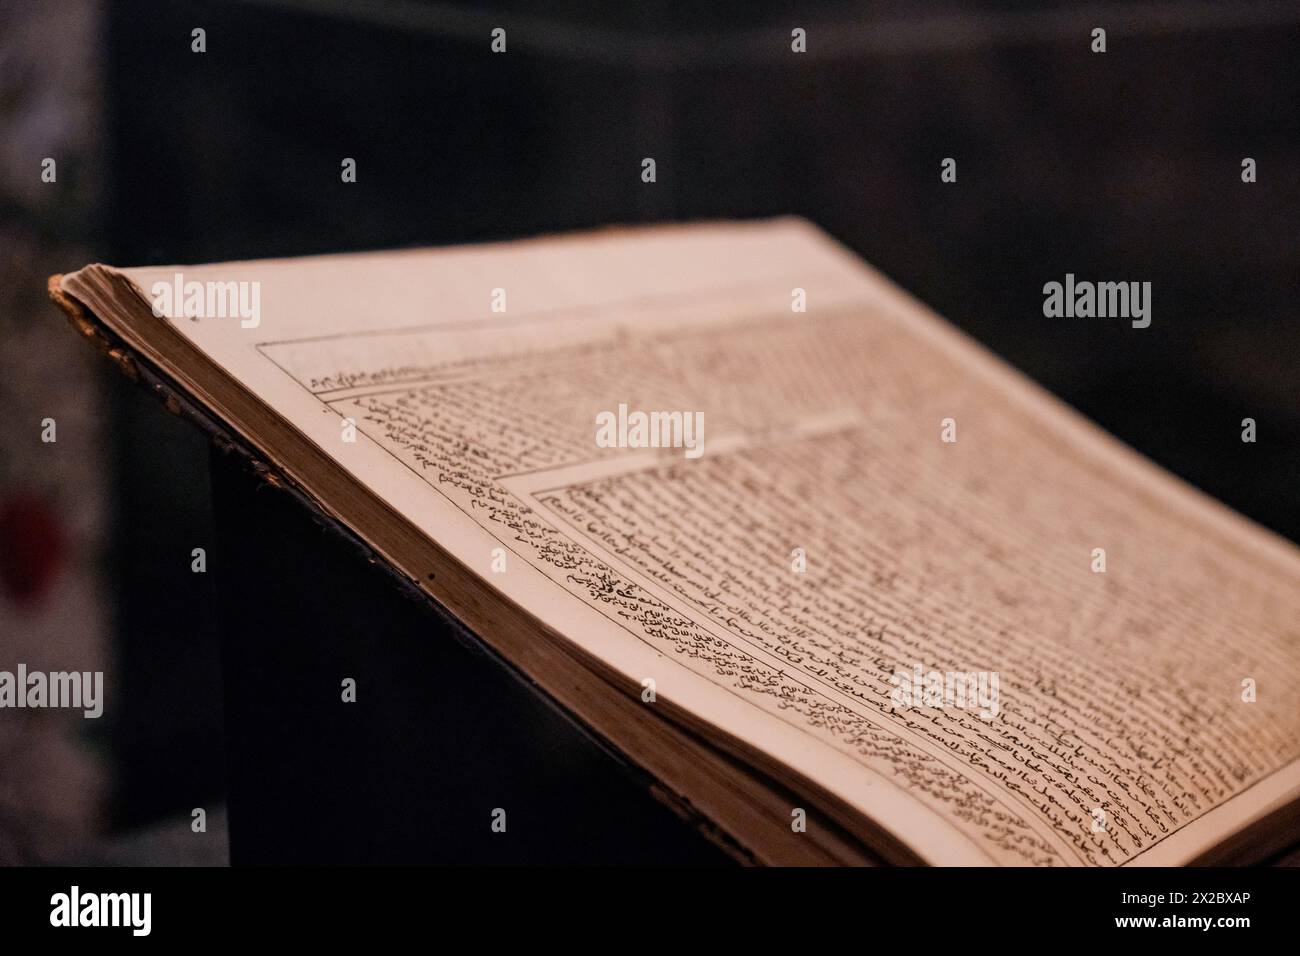 Una prospettiva illuminante che cattura una singola pagina da un Corano storico aperto, mostrando una saggezza senza tempo. Foto Stock